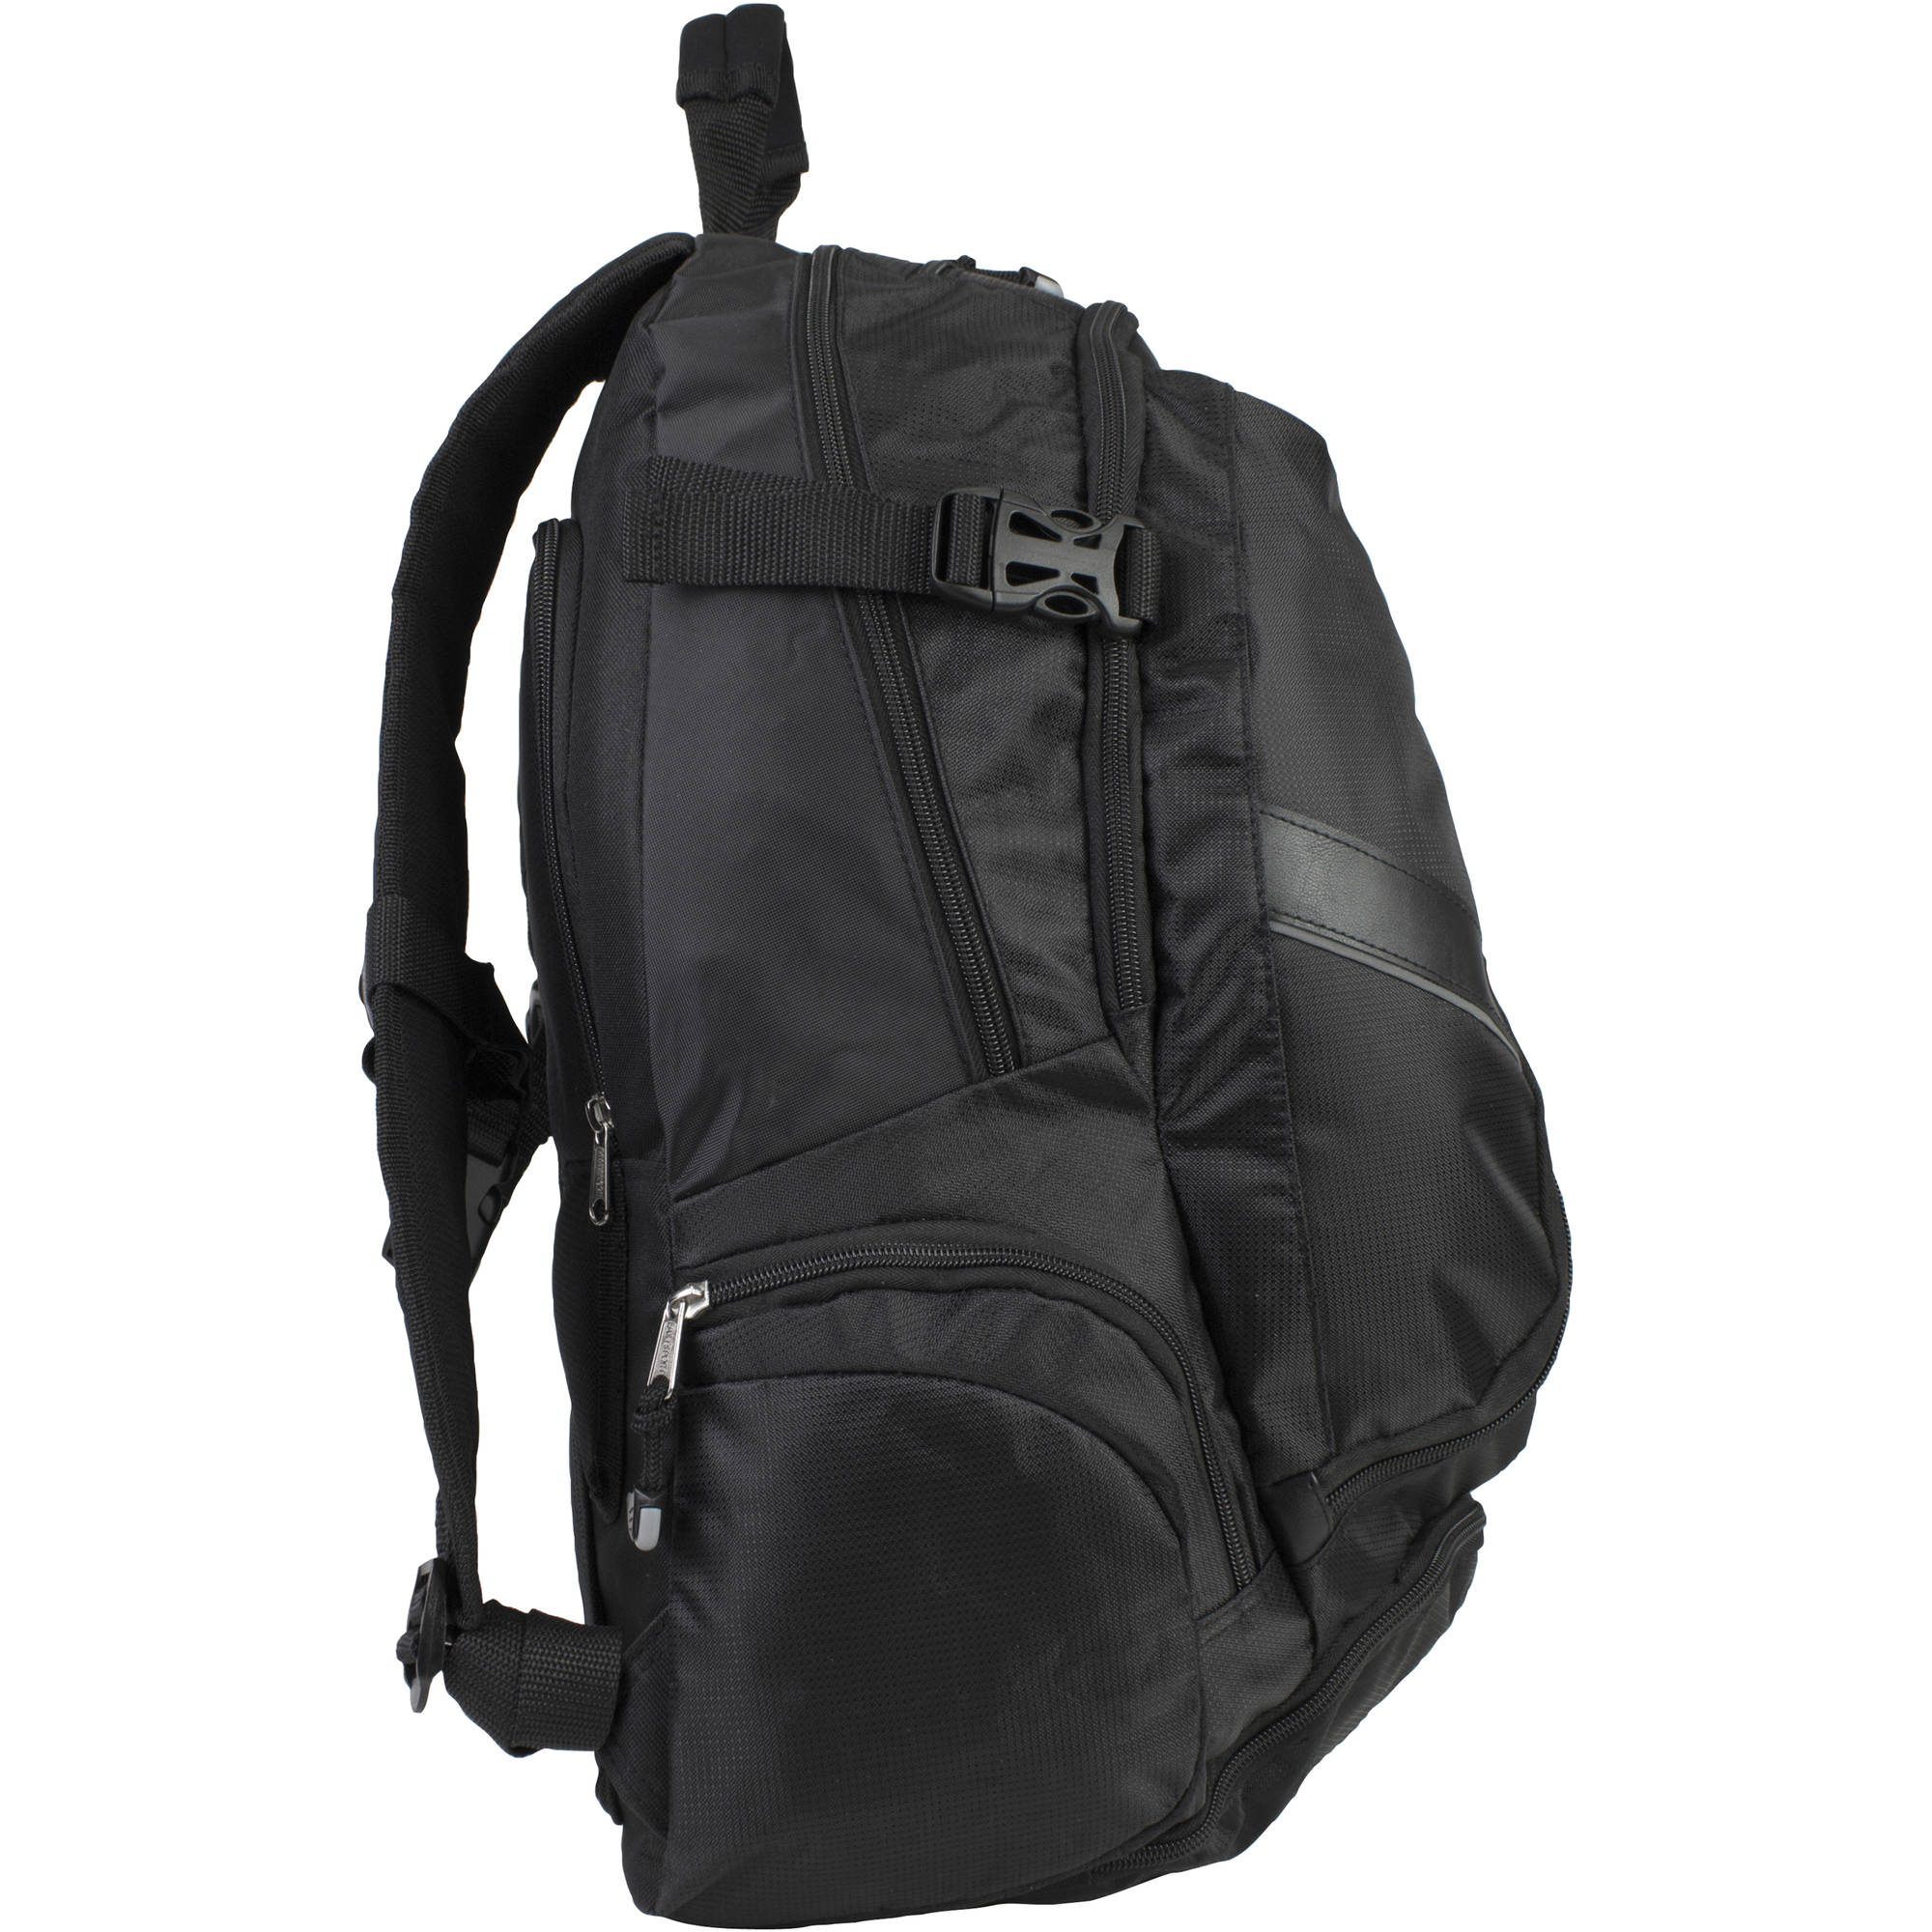 Laptop Backpack with Adjustable Padded Shoulder Straps - image 3 of 8